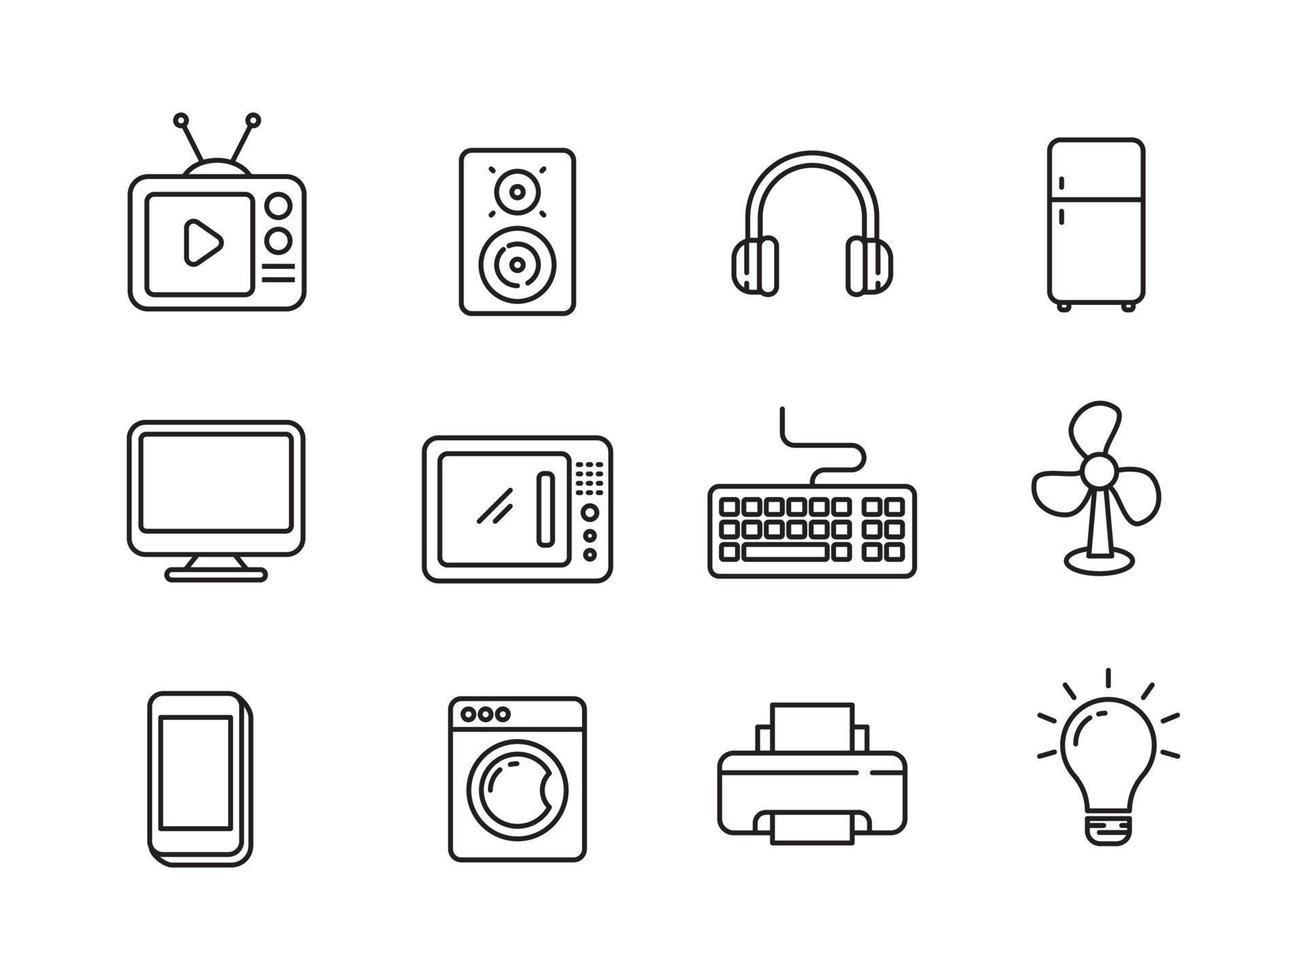 ensemble d'appareils ménagers et d'icônes électroniques dans un style linéaire isolé sur fond blanc vecteur